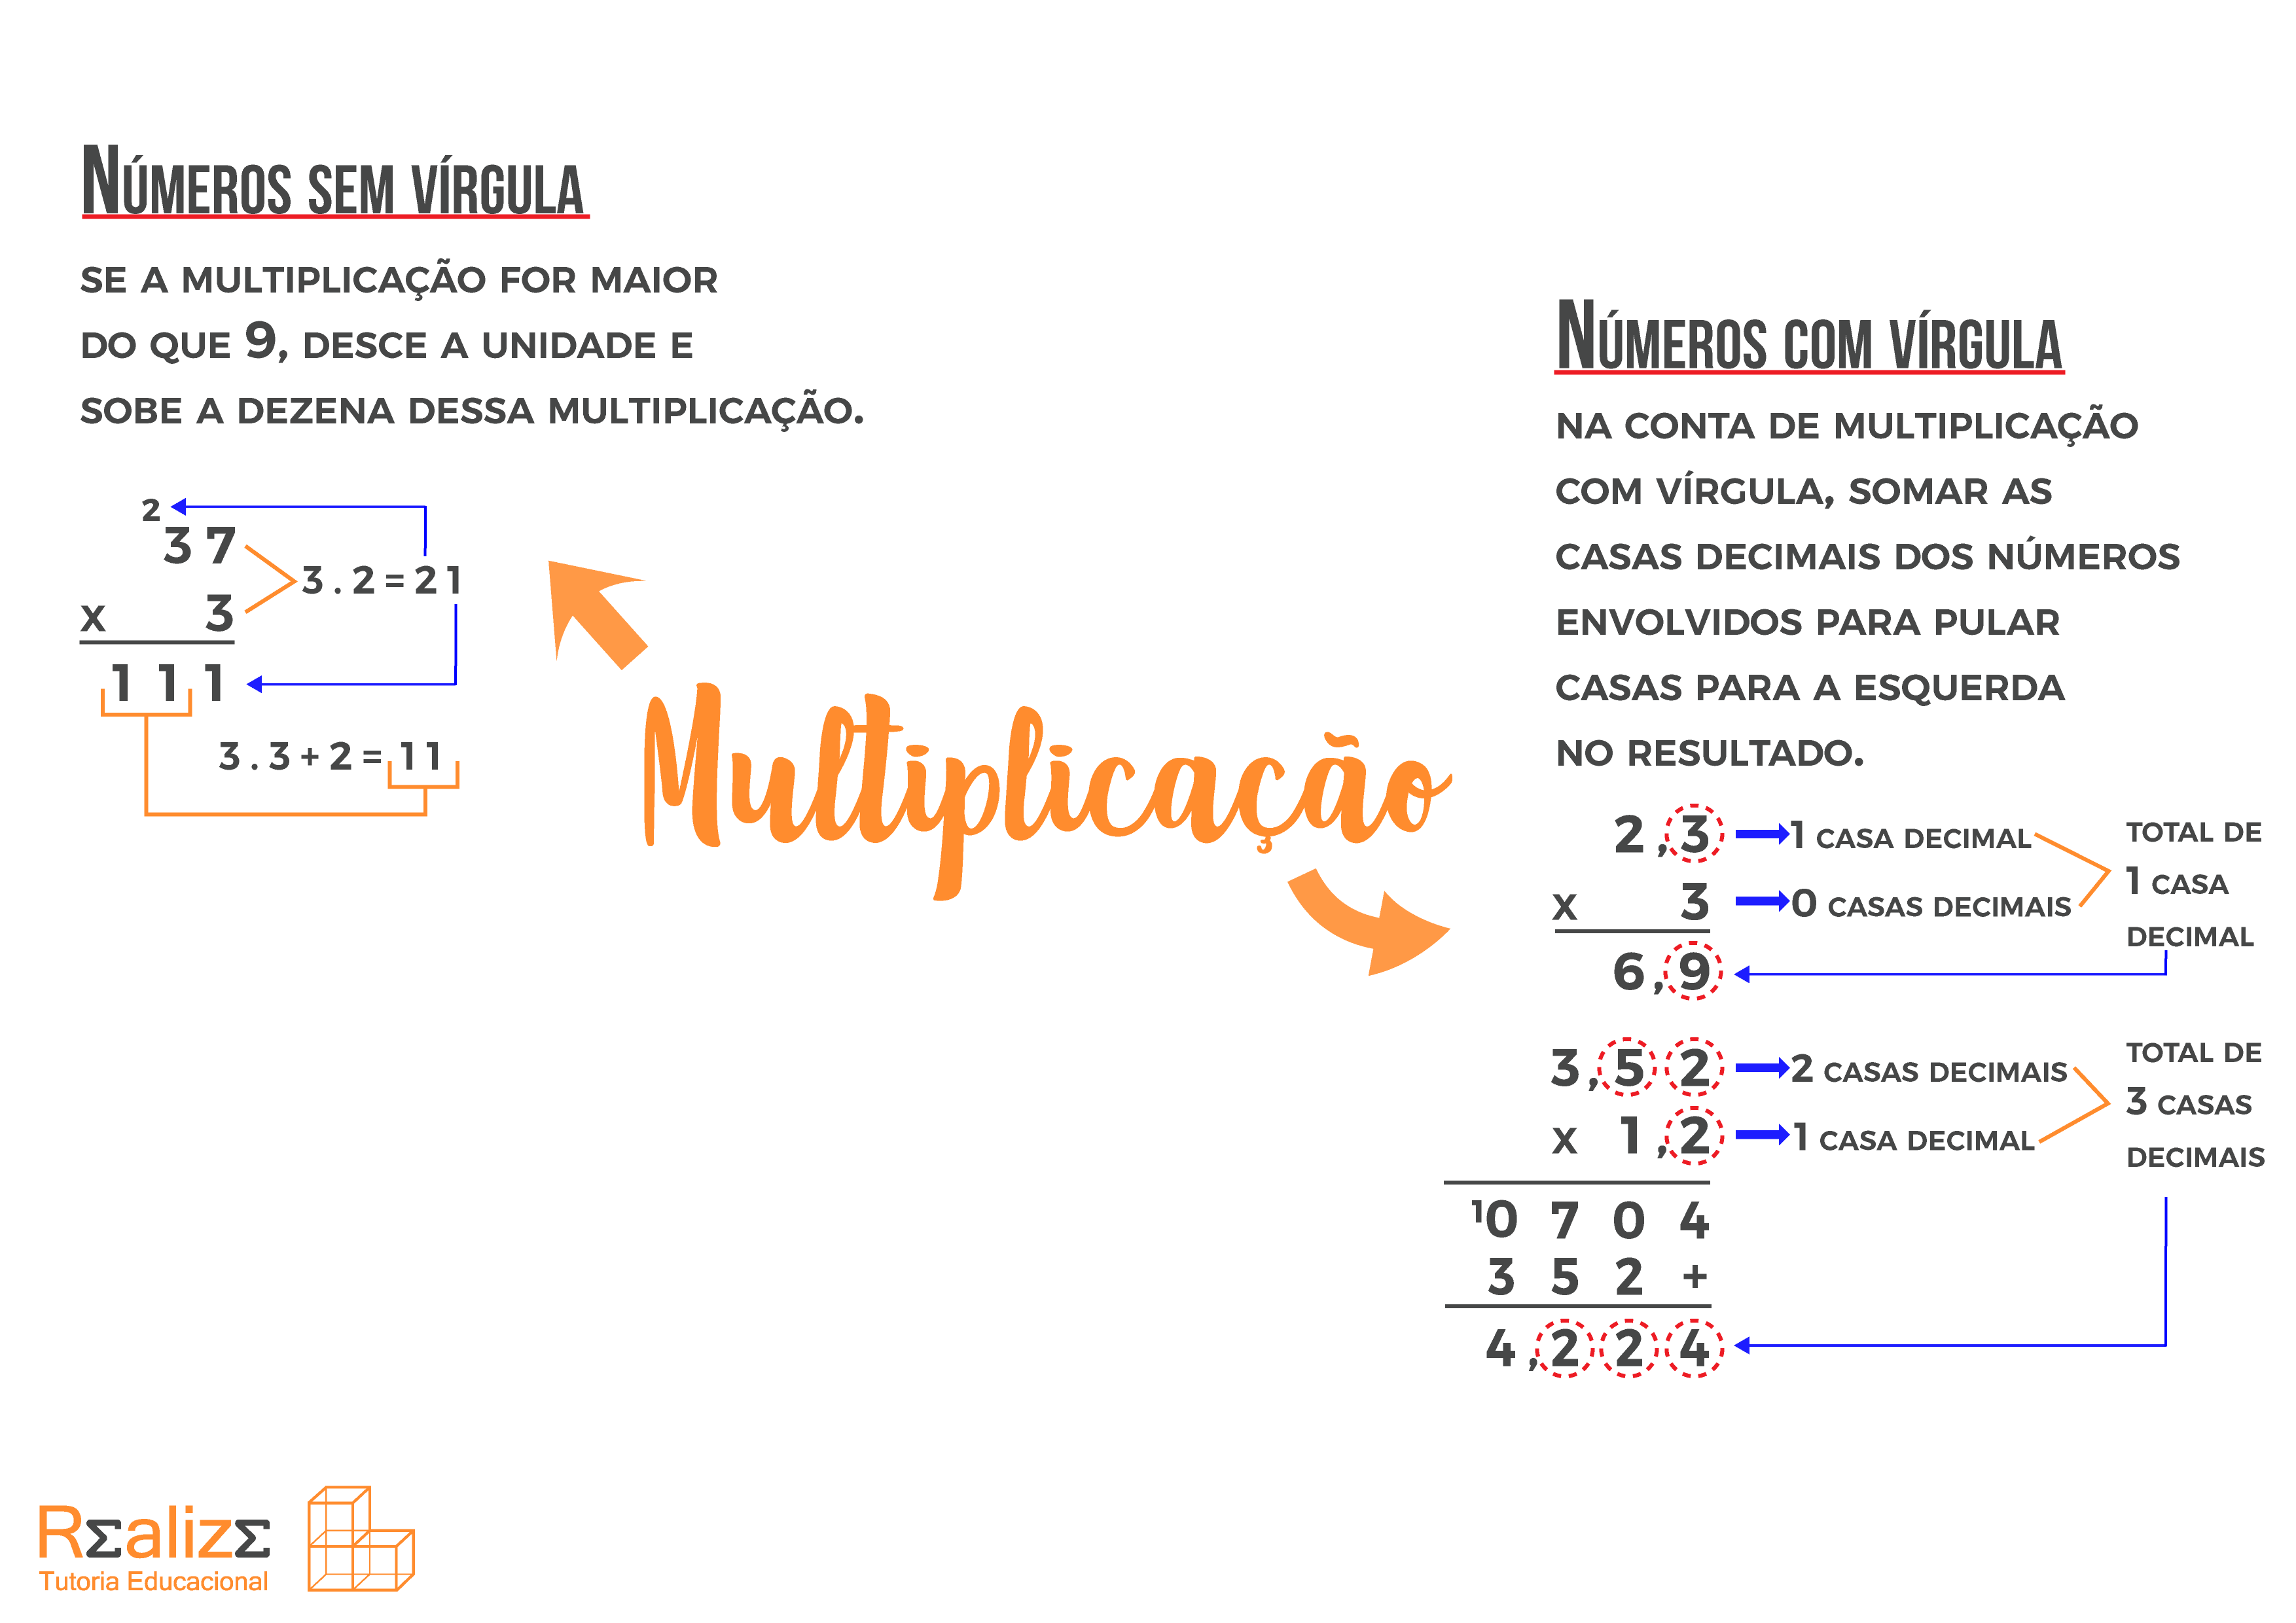 MULTIPLICAÇÃO - MAPA MENTAL. #multiplicação #matematica #mapamental #e